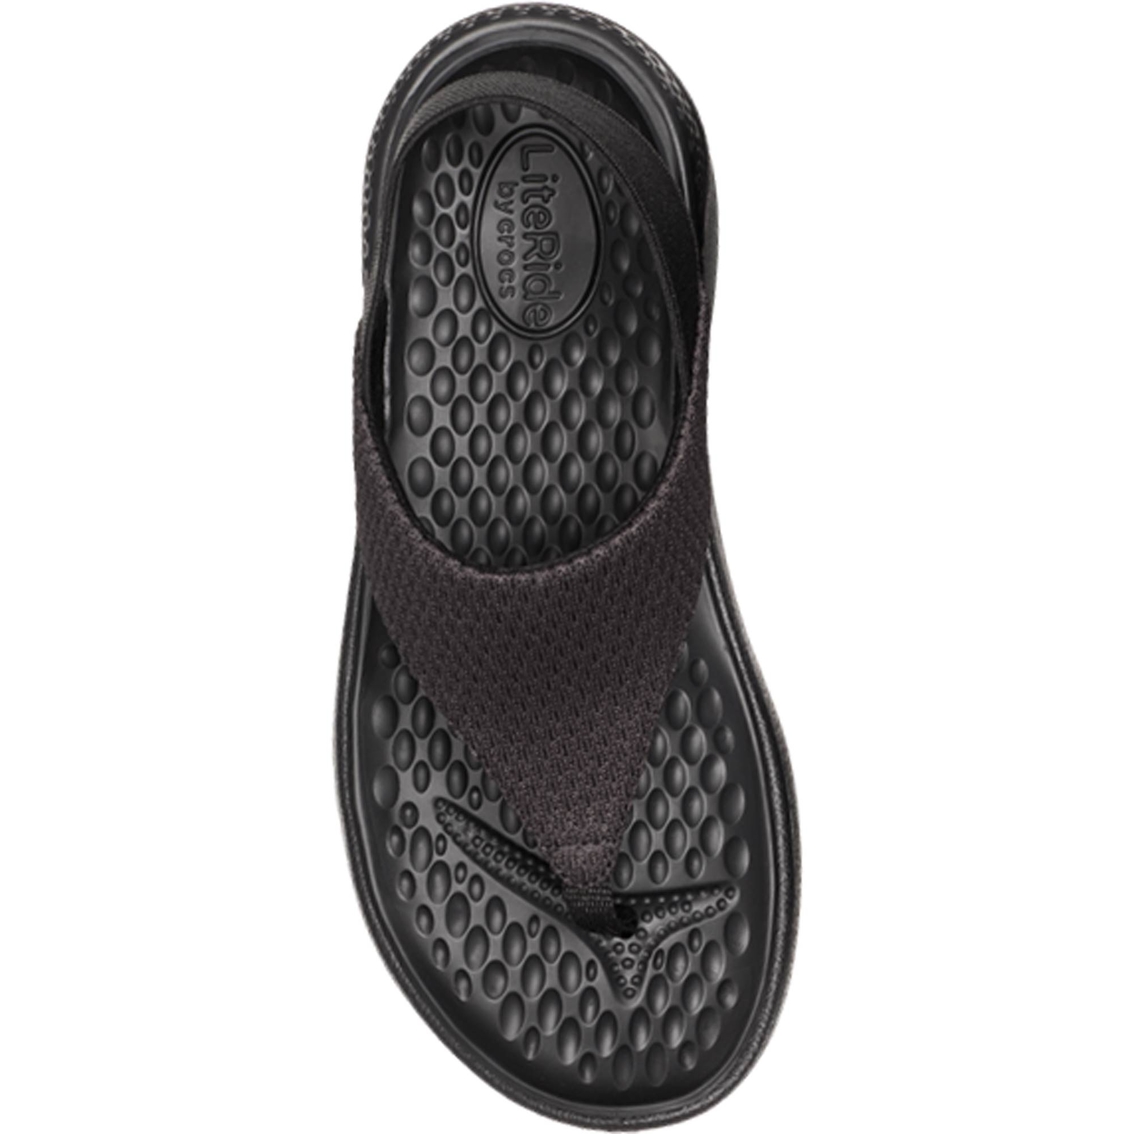 Crocs Women's LiteRide Mesh Flip Flops - Image 3 of 5